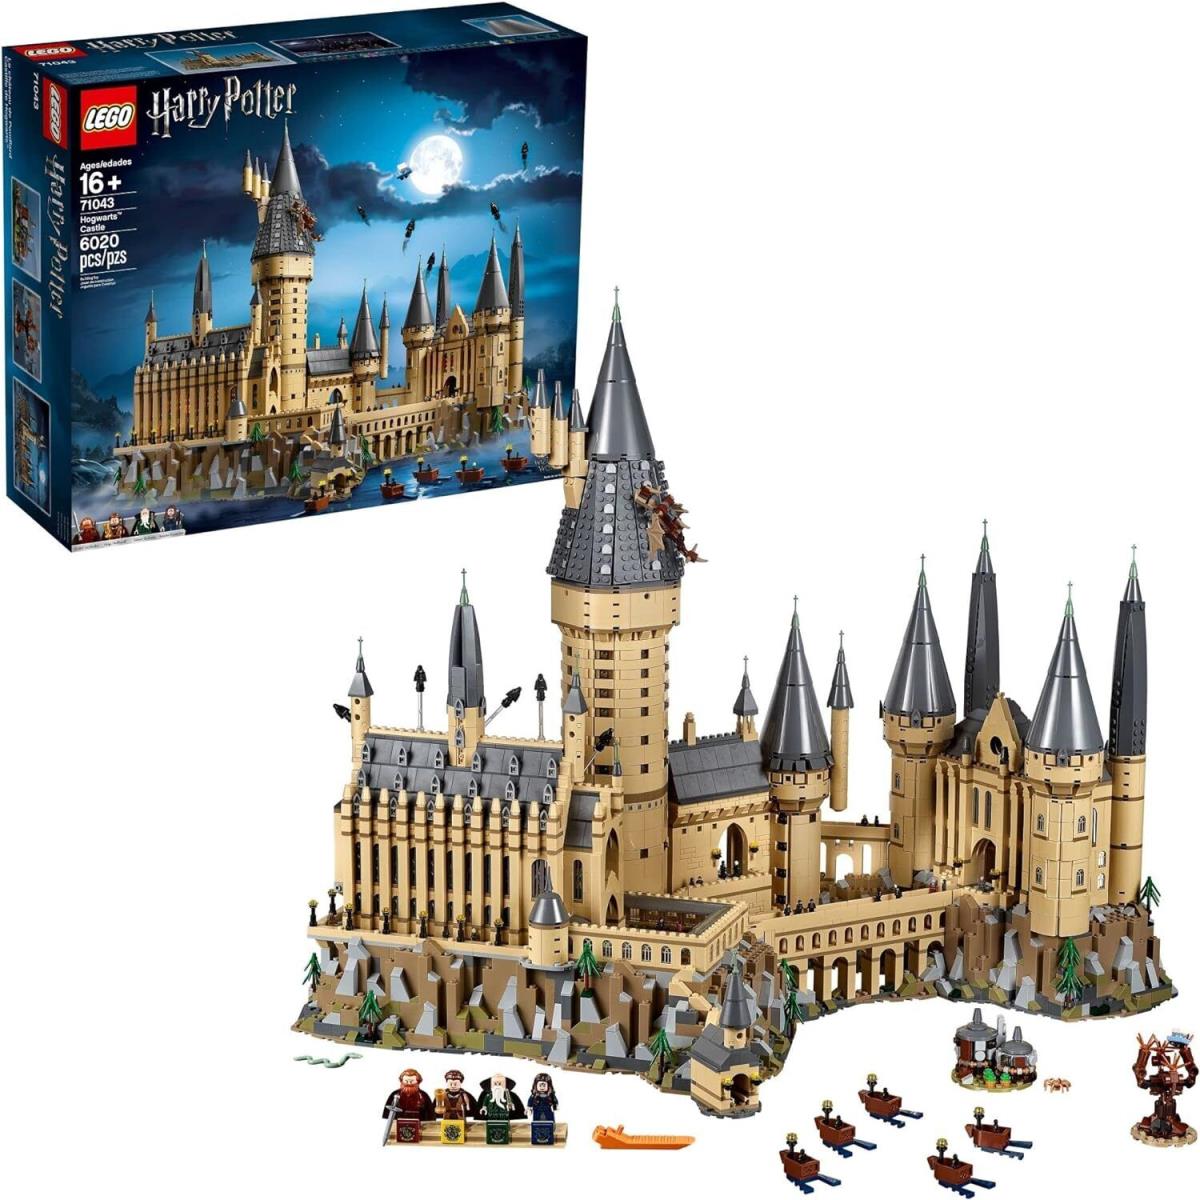 Lego Harry Potter Hogwarts Castle 71043 Building Kit Set 6 020 Pieces